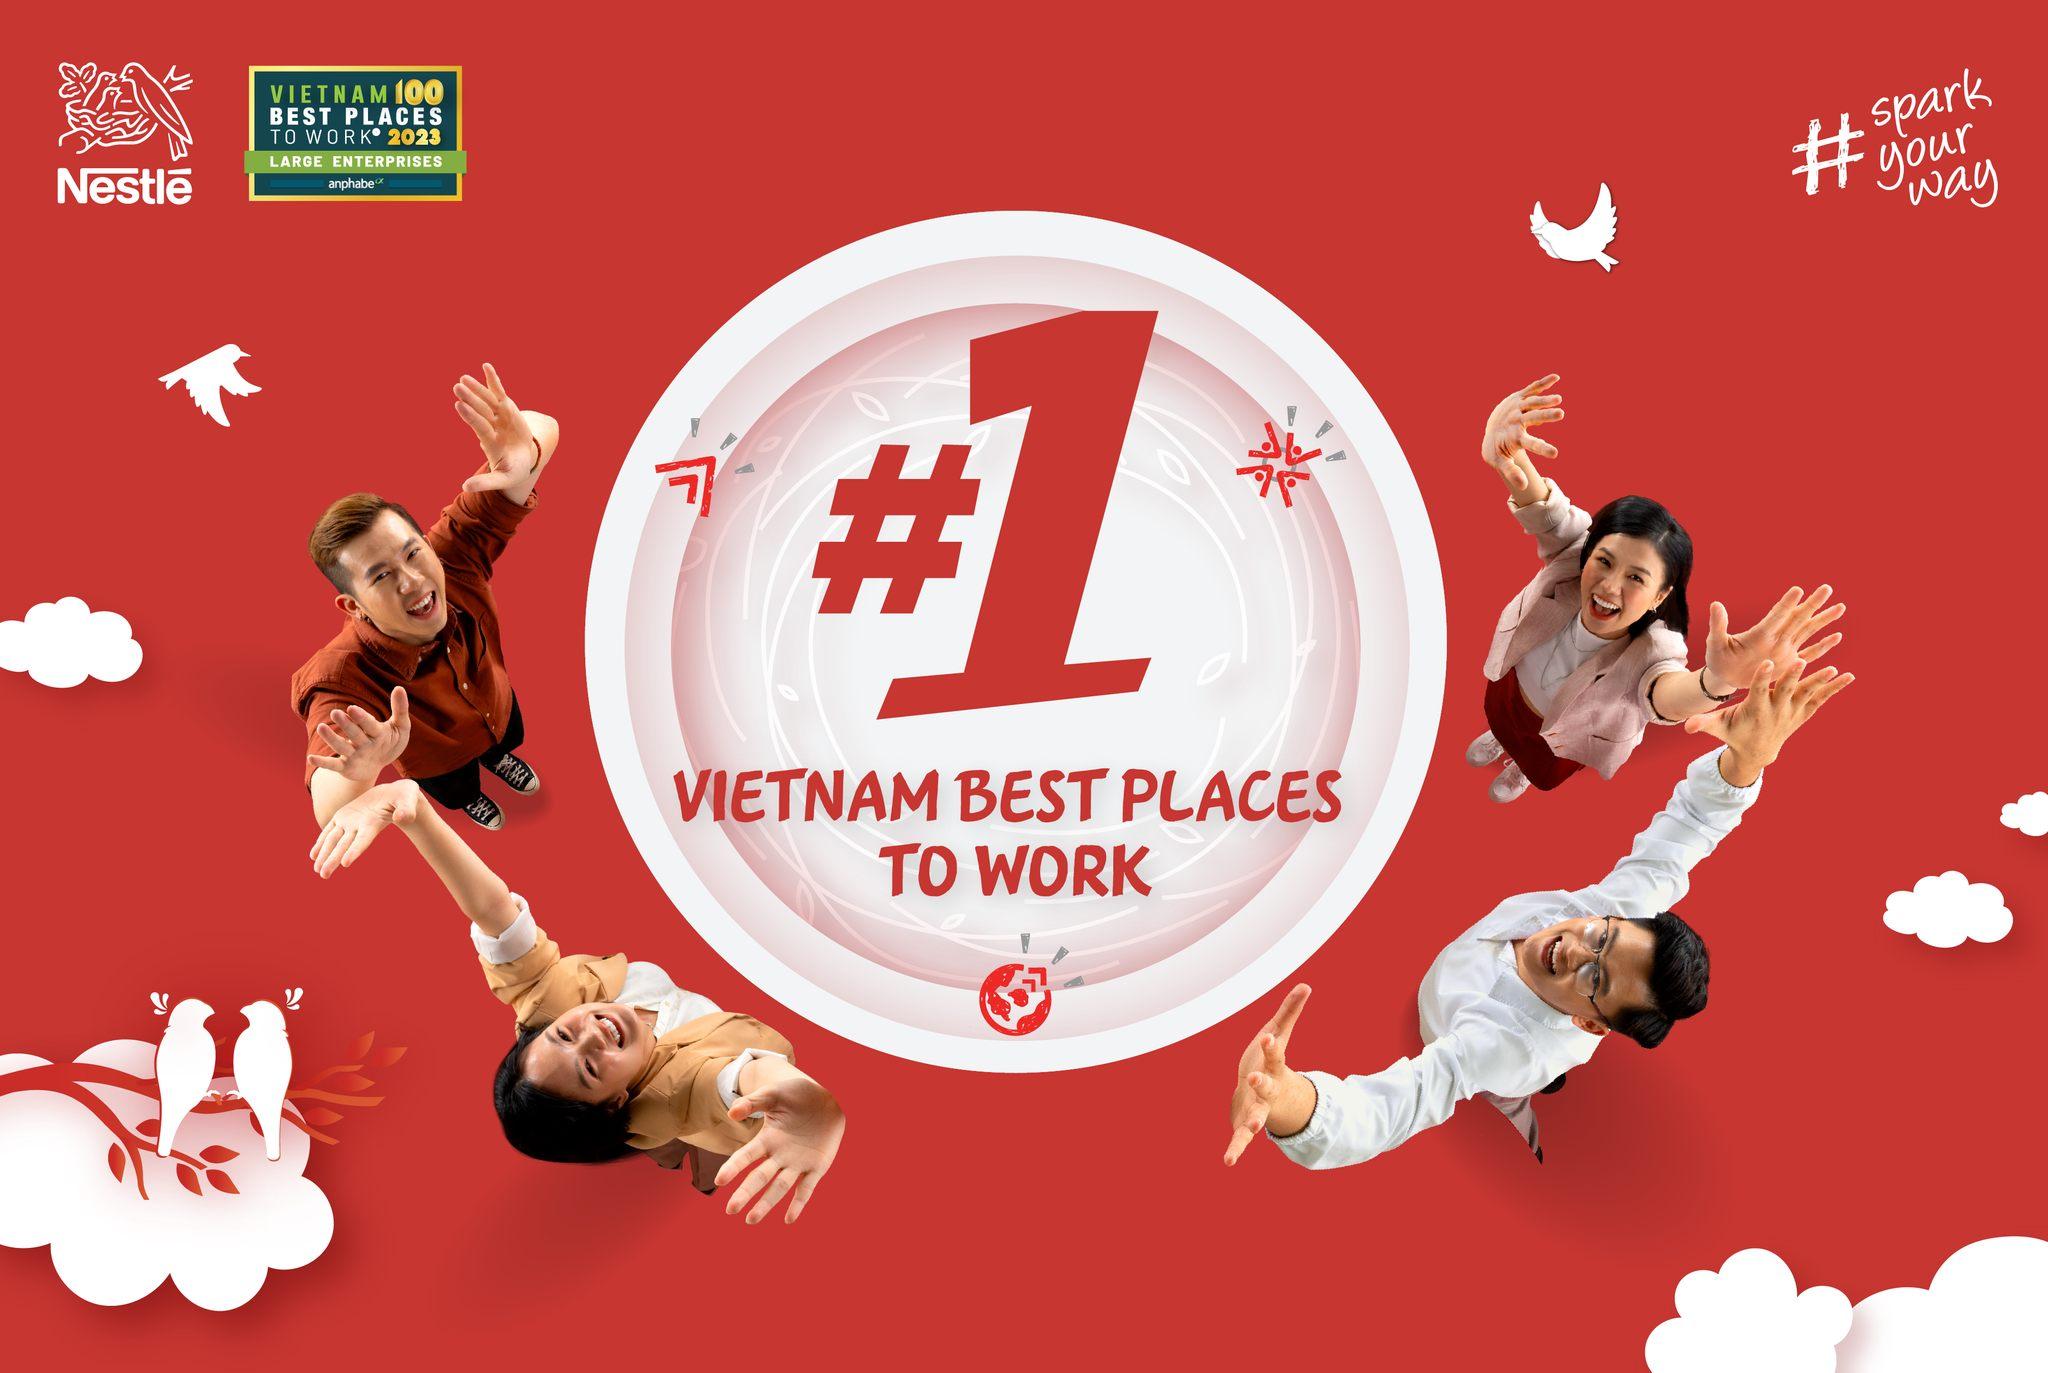 Nestlé Vietnam Ltd., tuyển dụng - Tìm việc mới nhất, lương thưởng hấp dẫn.